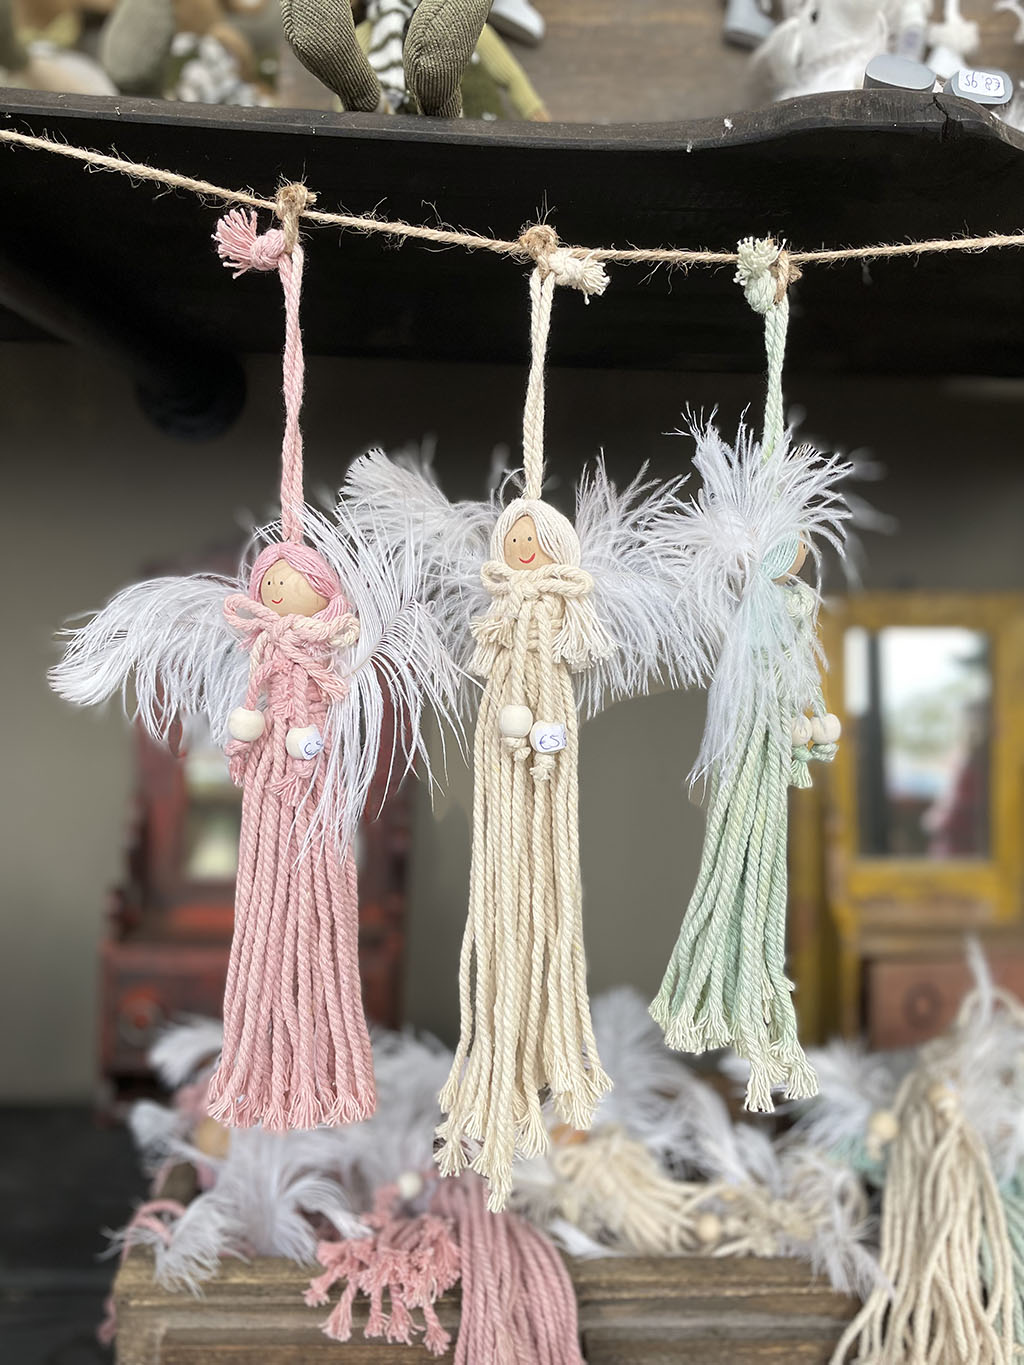 engeltjes gemaakt van wol in drie verschillende kleuren.